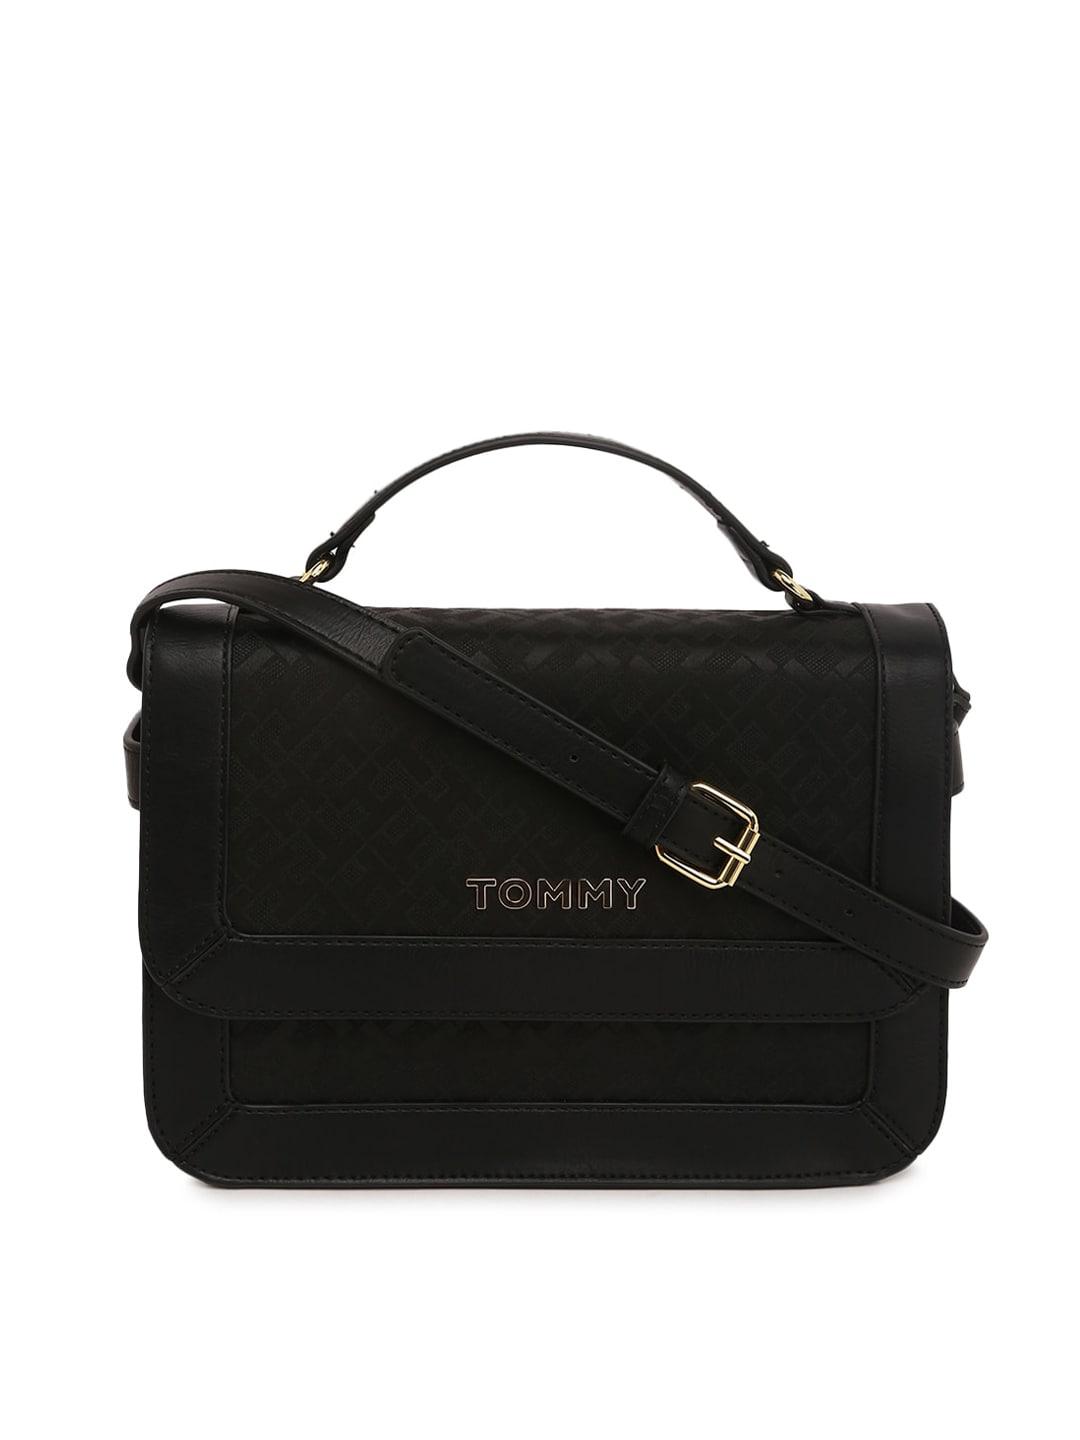 Tommy Hilfiger Detachable Sling Structured Satchel Handbag